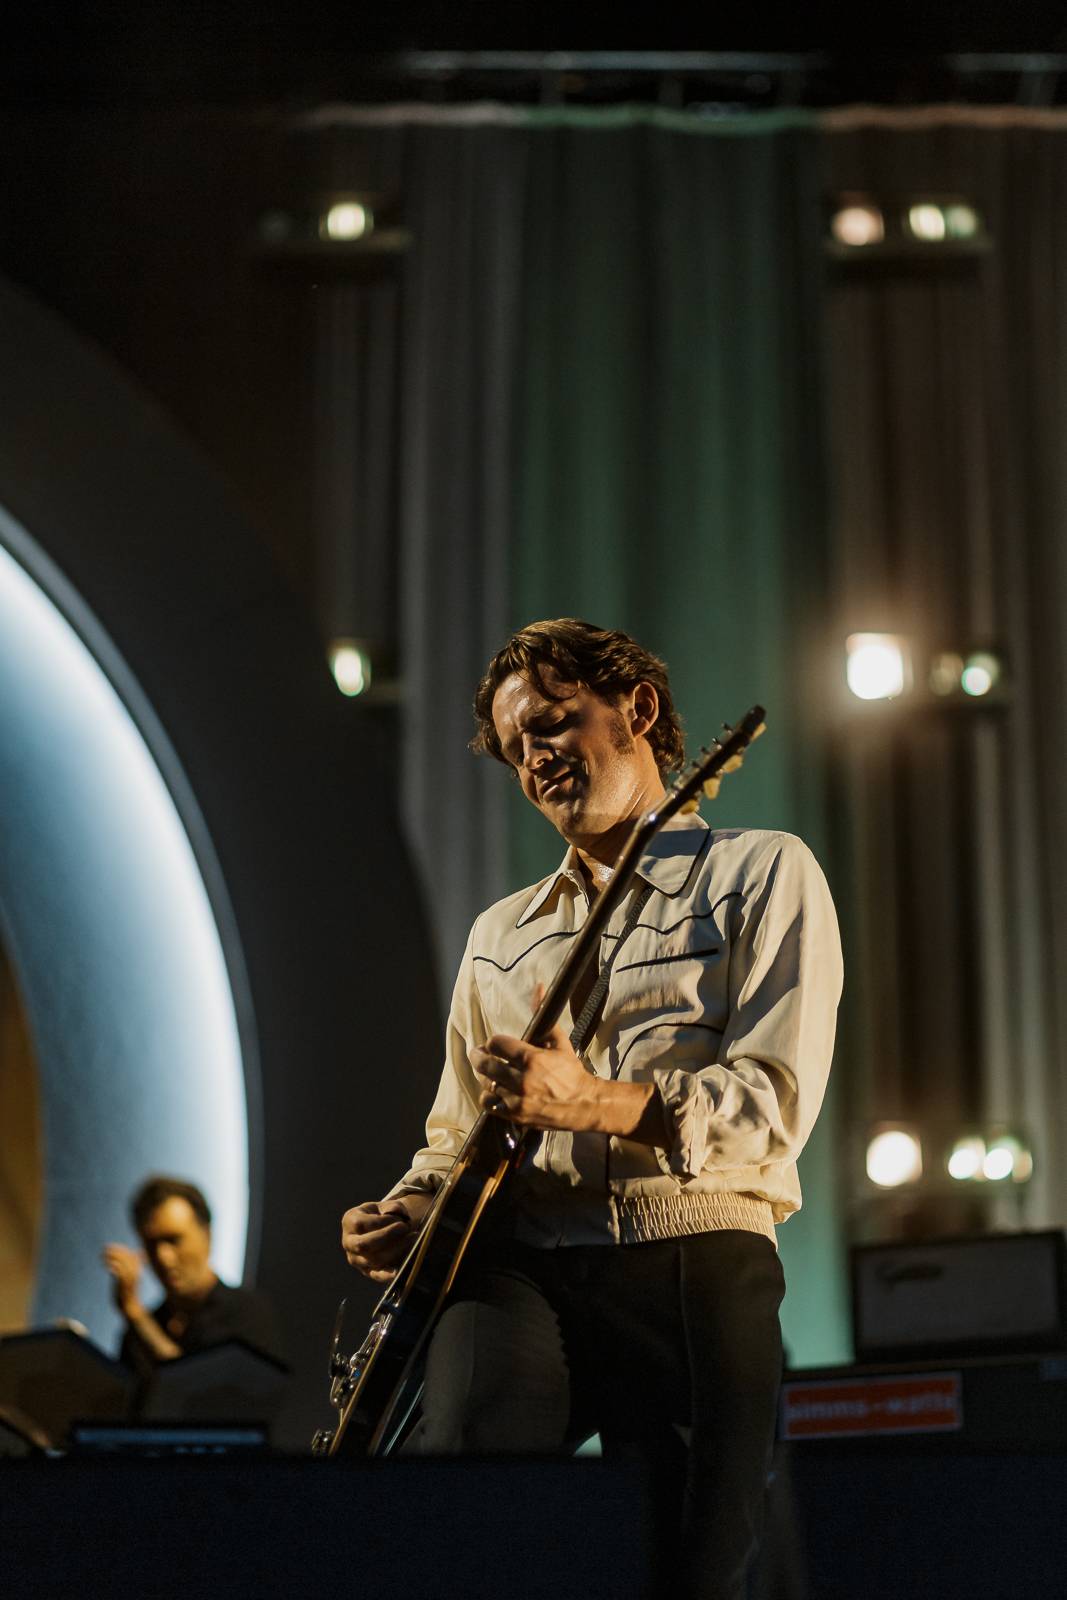 Protřepat, nemíchat! Arctic Monkeys předvedli v Praze show jako vystřiženou ze 70. let